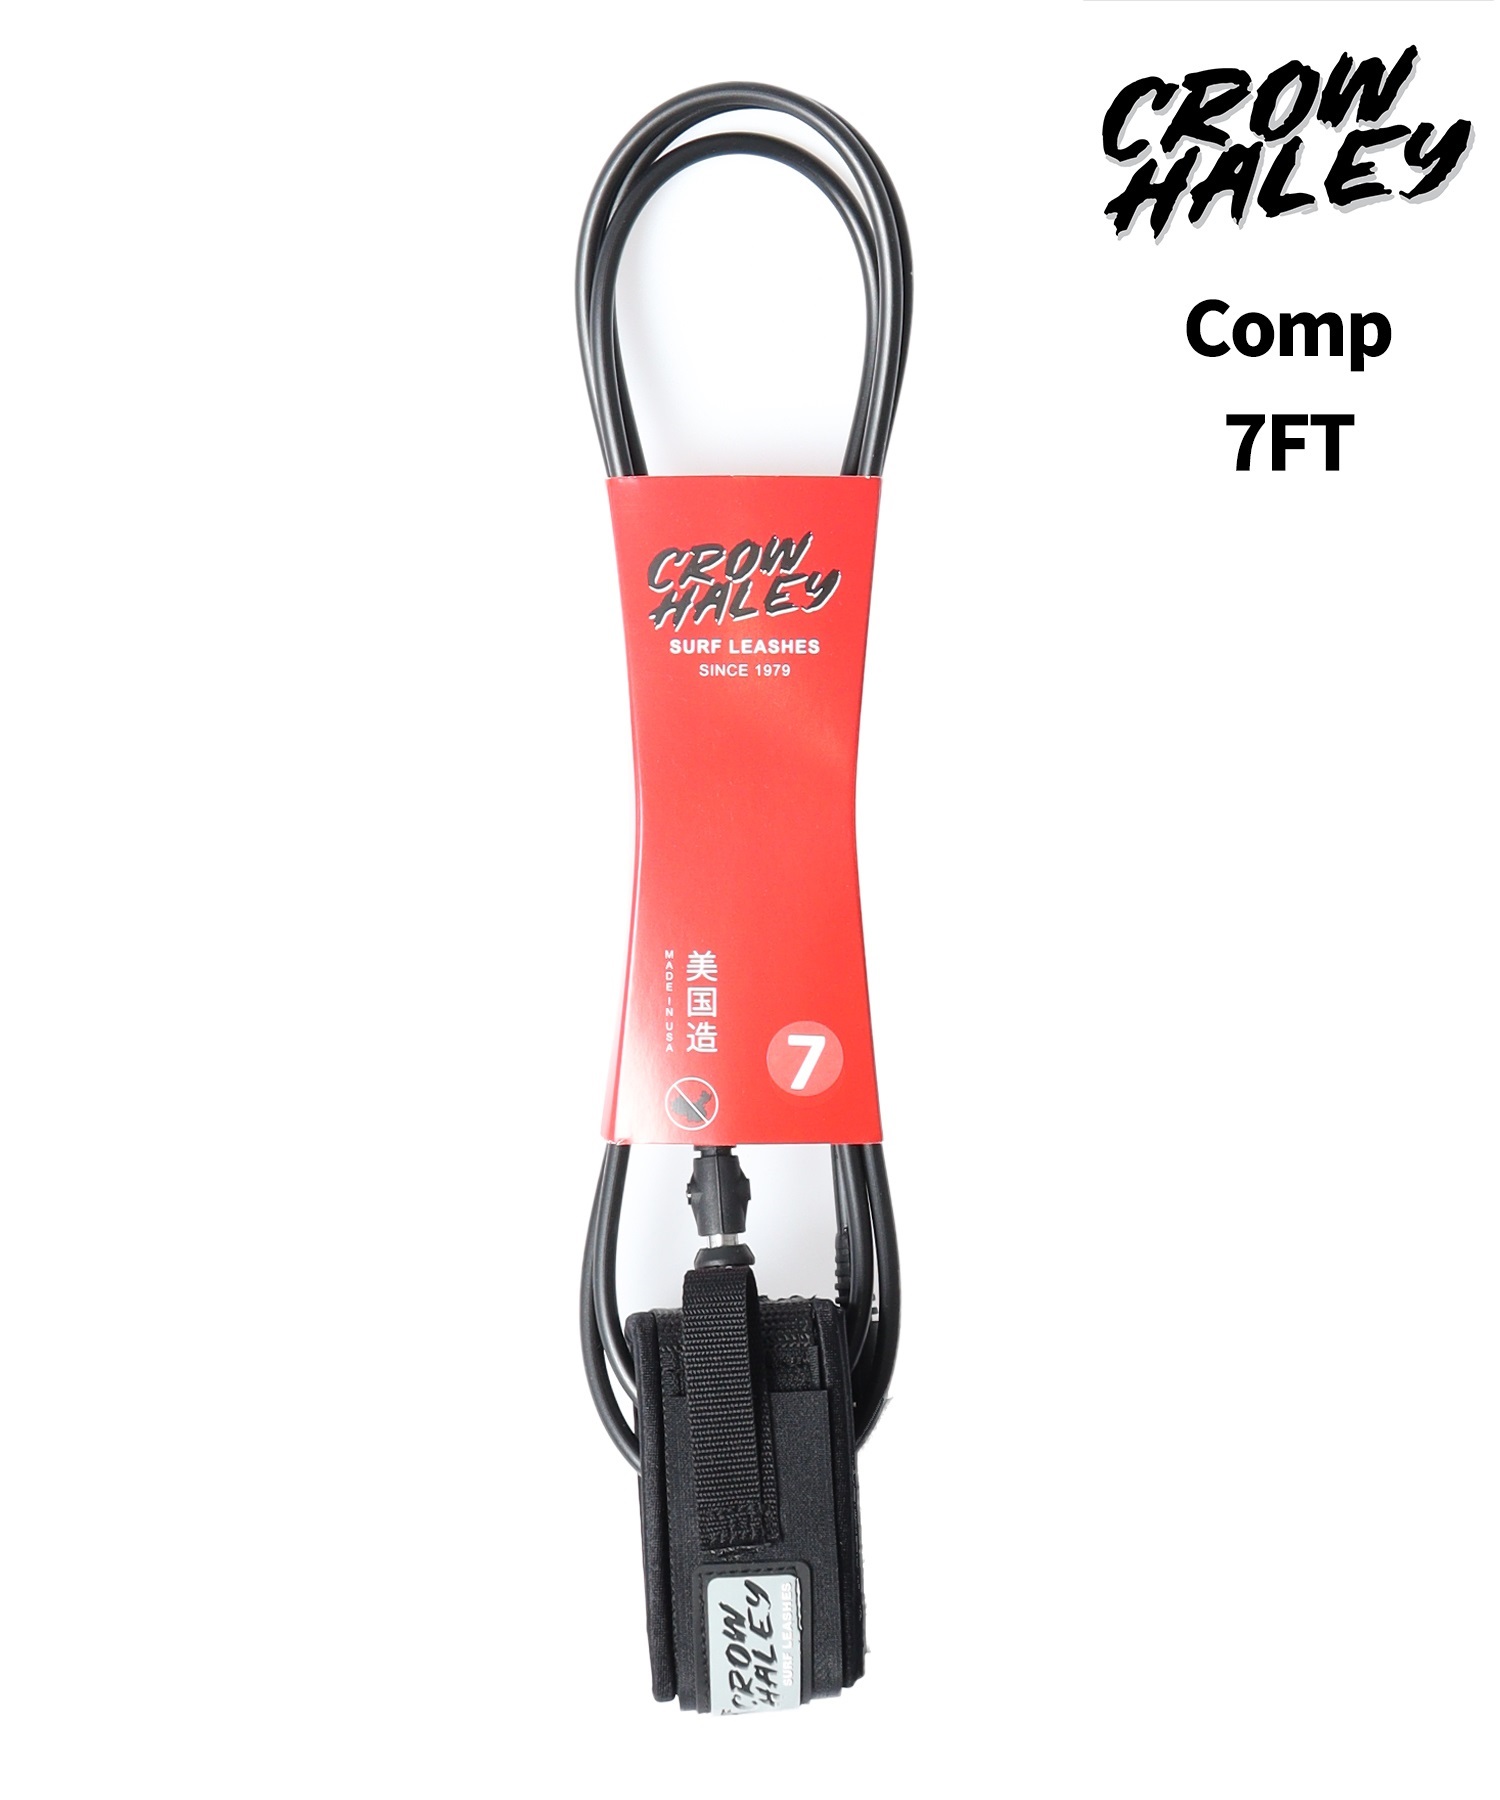 CLOW HALEY クロウ ハーレー COMP 7.0FT リーシュコード サーフィン ミッドボード ムラサキスポーツ(MBLK-7.0)